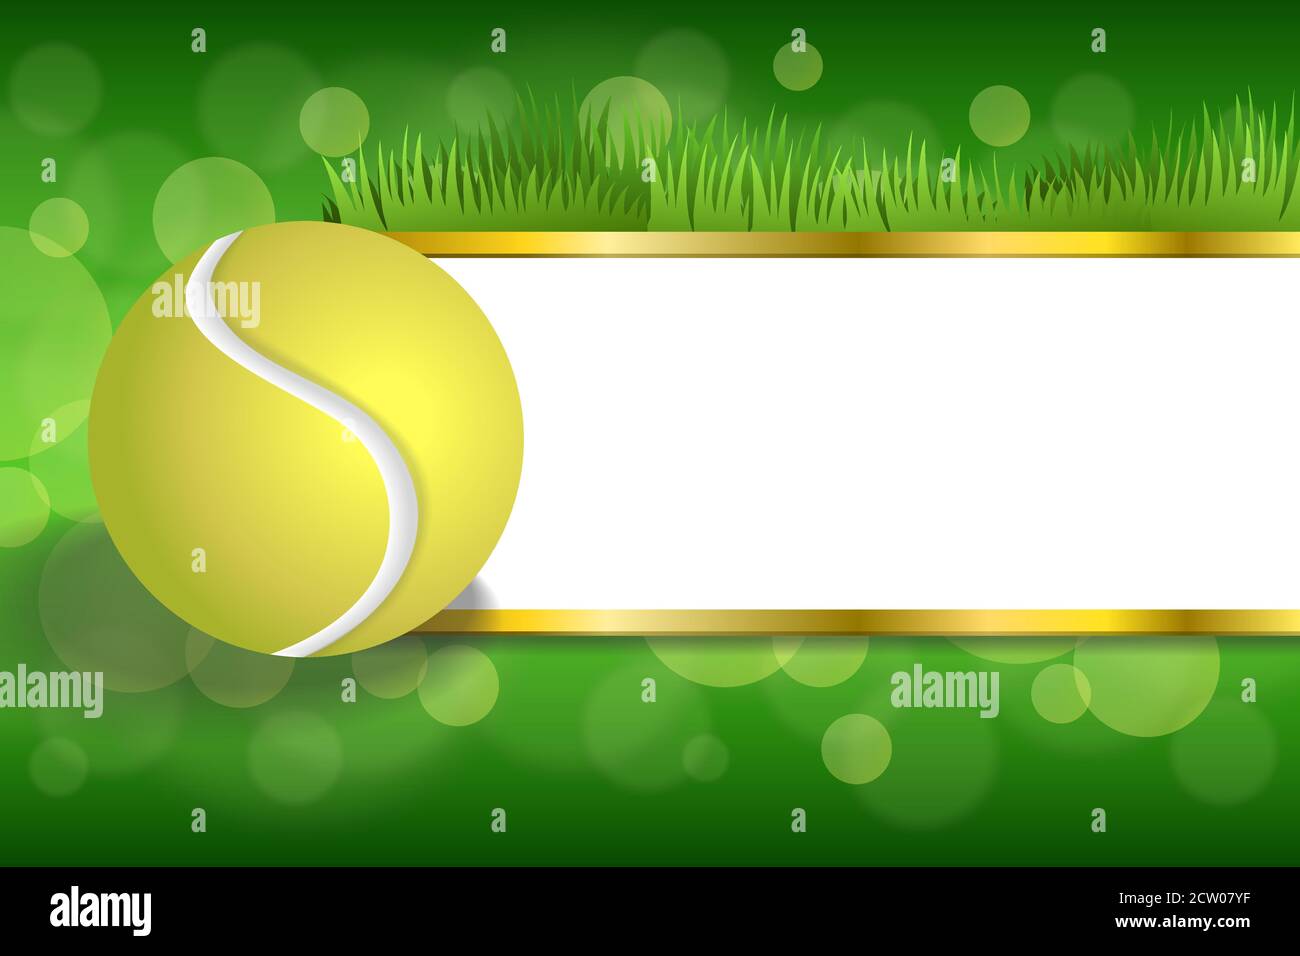 Hintergrund abstrakt grün Sport weiß Tennis gelb Ball Gold Streifen Vektor für die Rahmendarstellung Stock Vektor